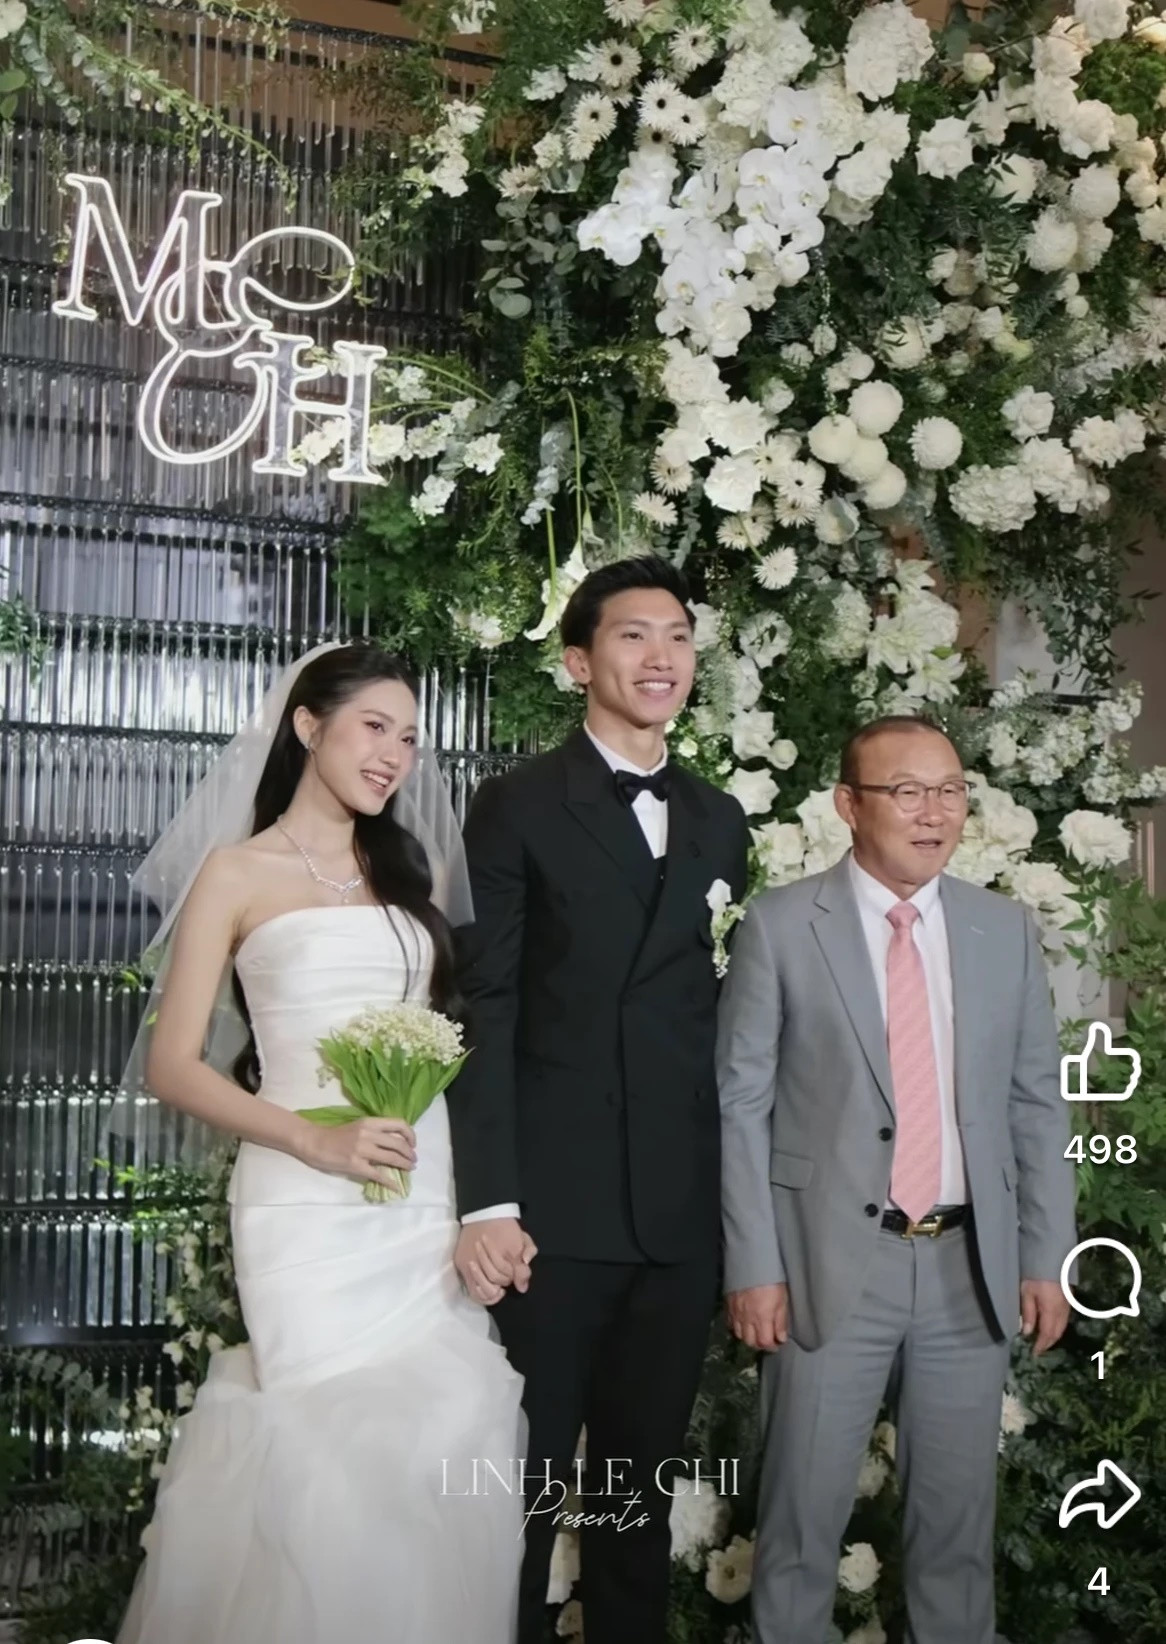 Cựu HLV Park Hang Seo tới dự đám cưới của cậu học trò Đoàn Văn Hậu